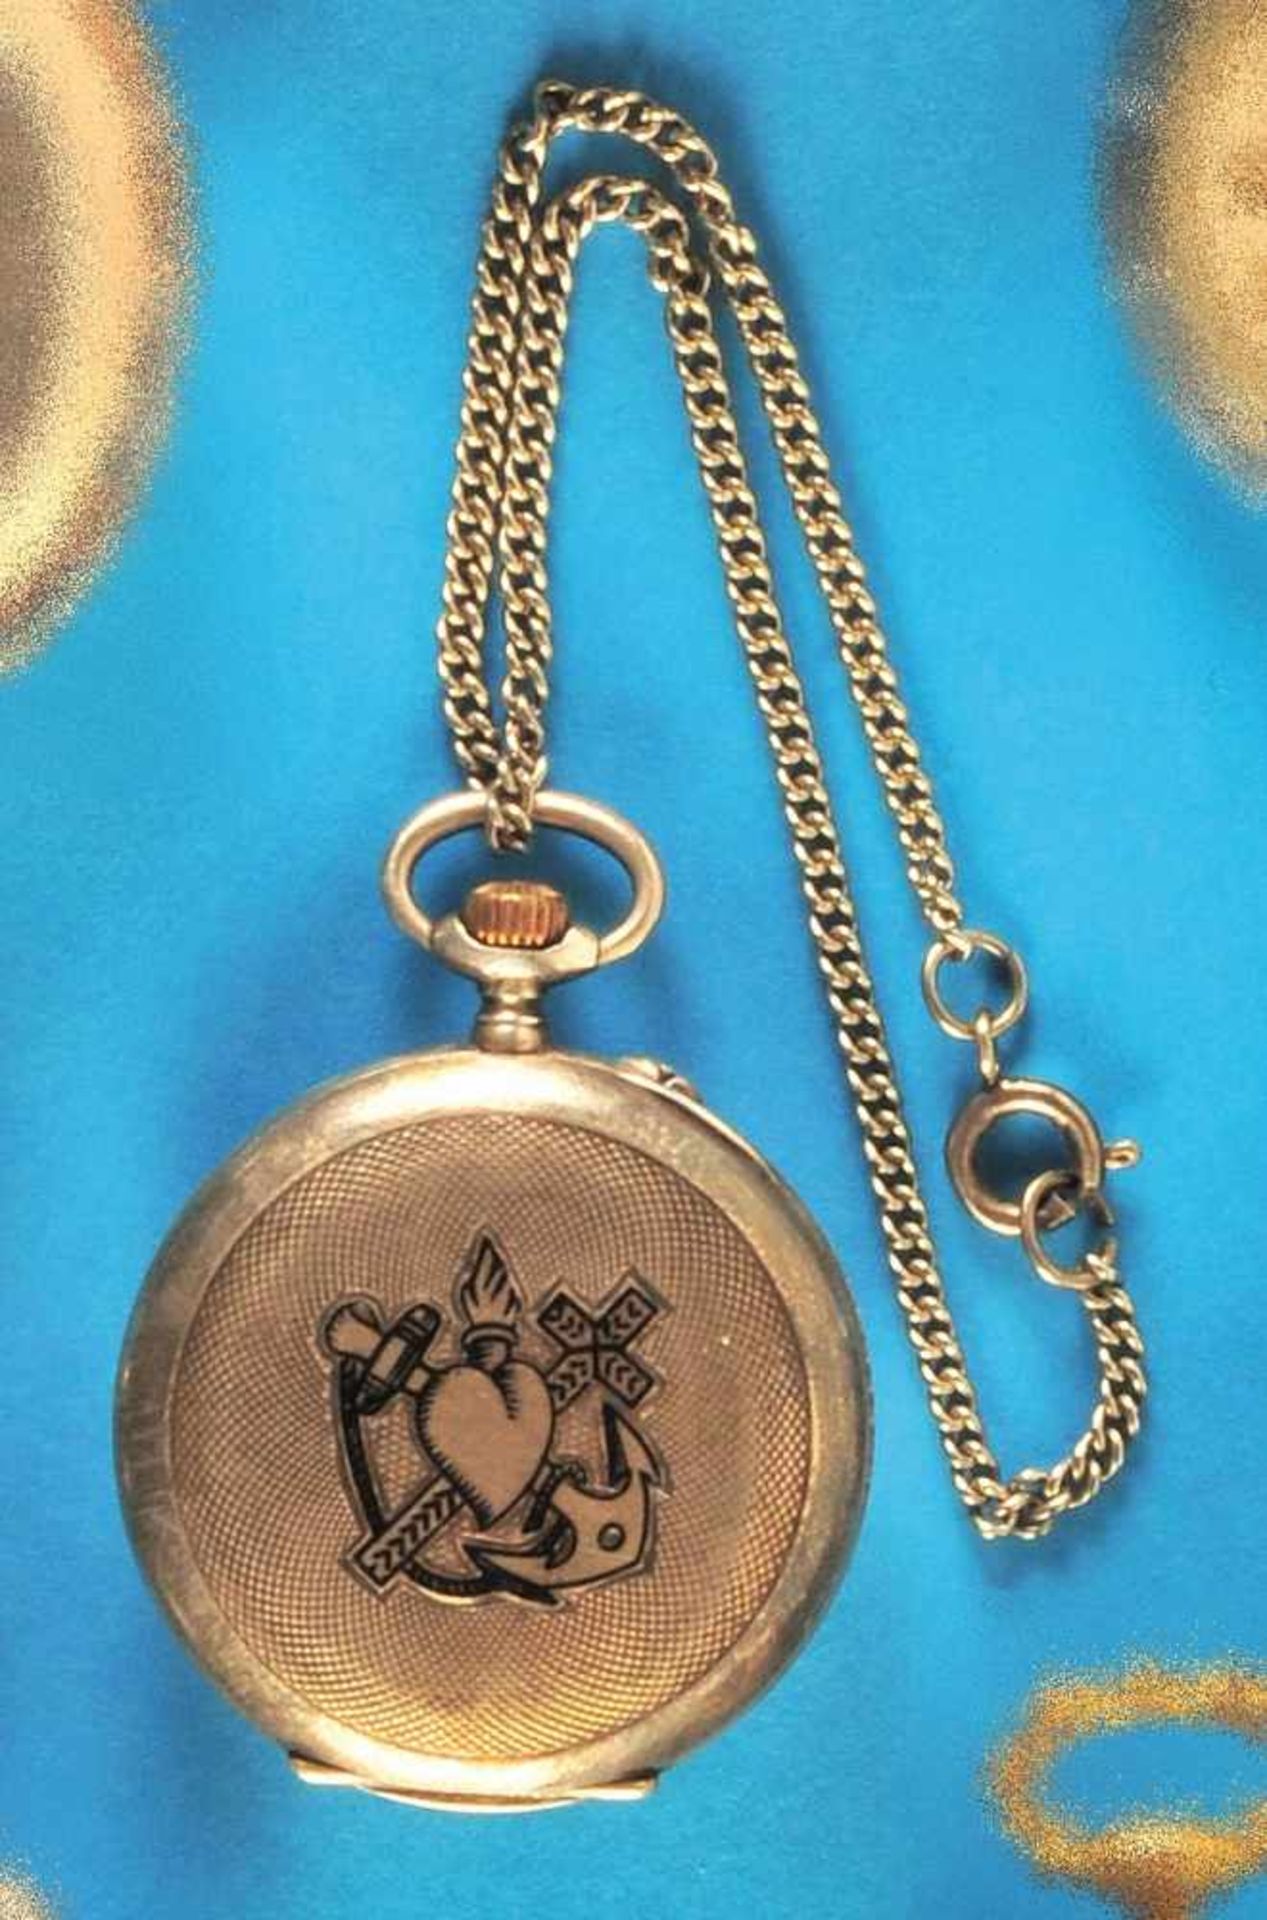 Silver ladies pocket watch with trademark cloverleaf